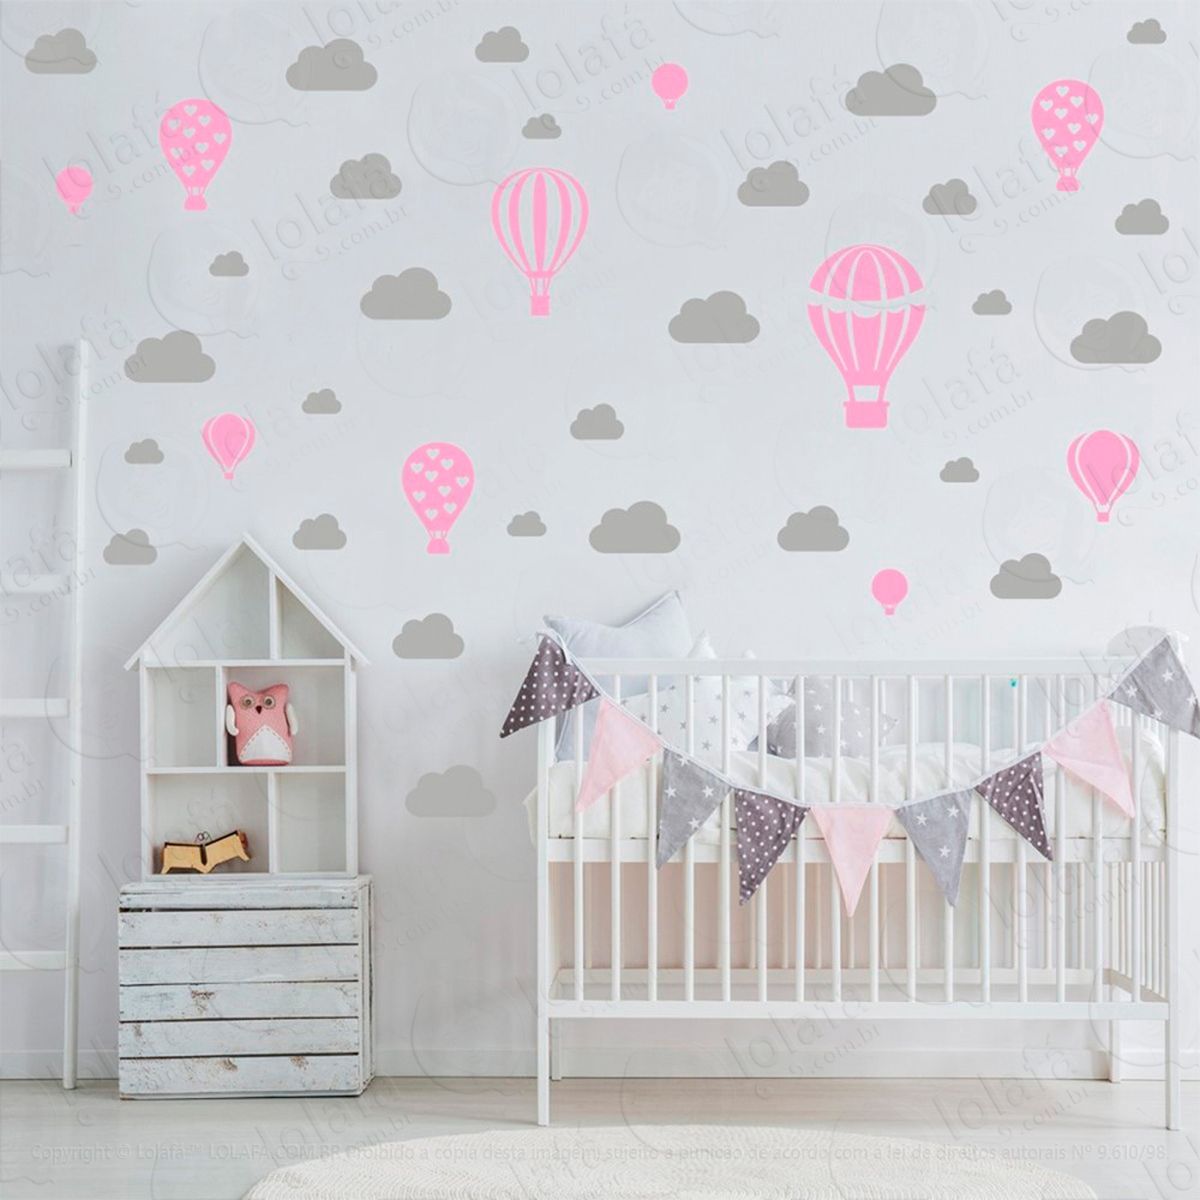 adesivos balões e nuvens 42 peças adesivos para quarto de bebê infantil - mod:951